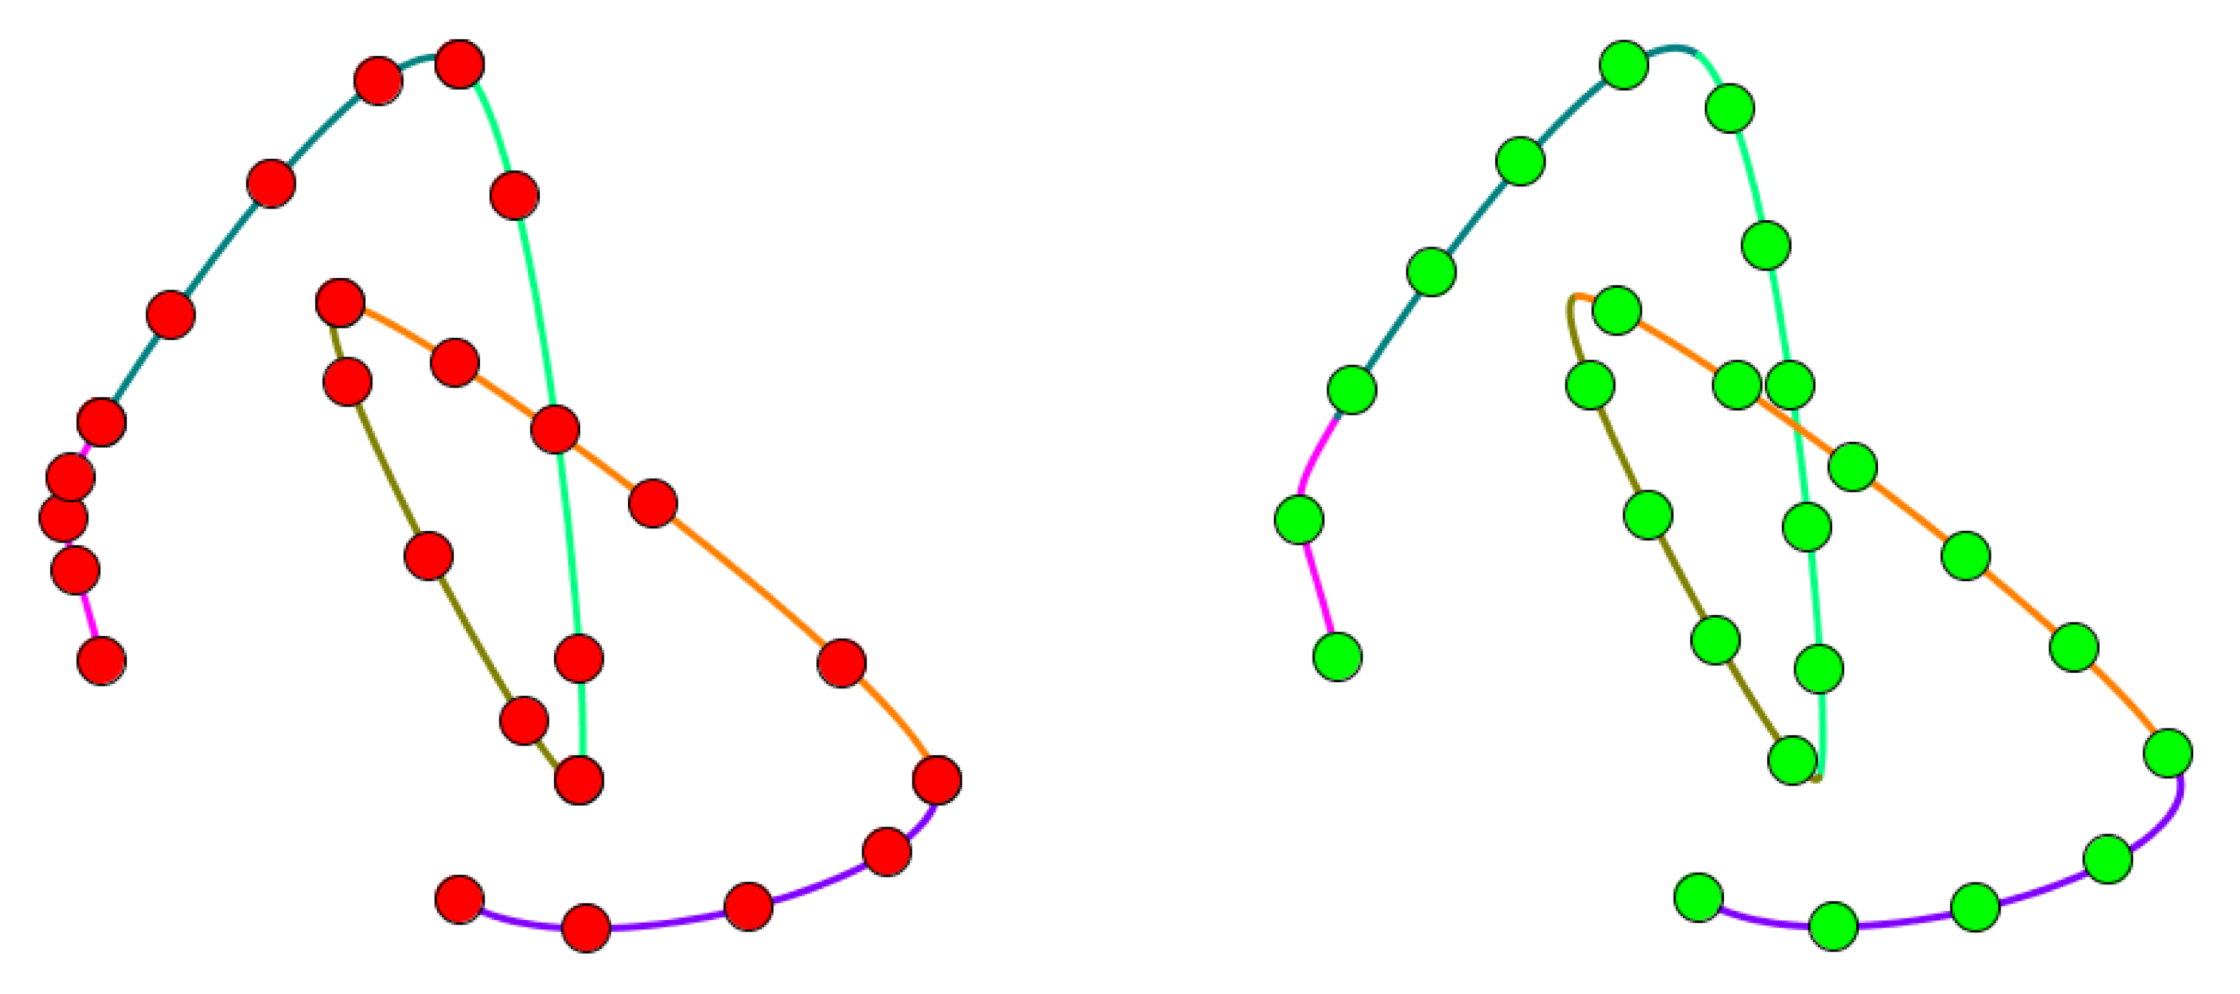 uniform dots on a multi-point curve